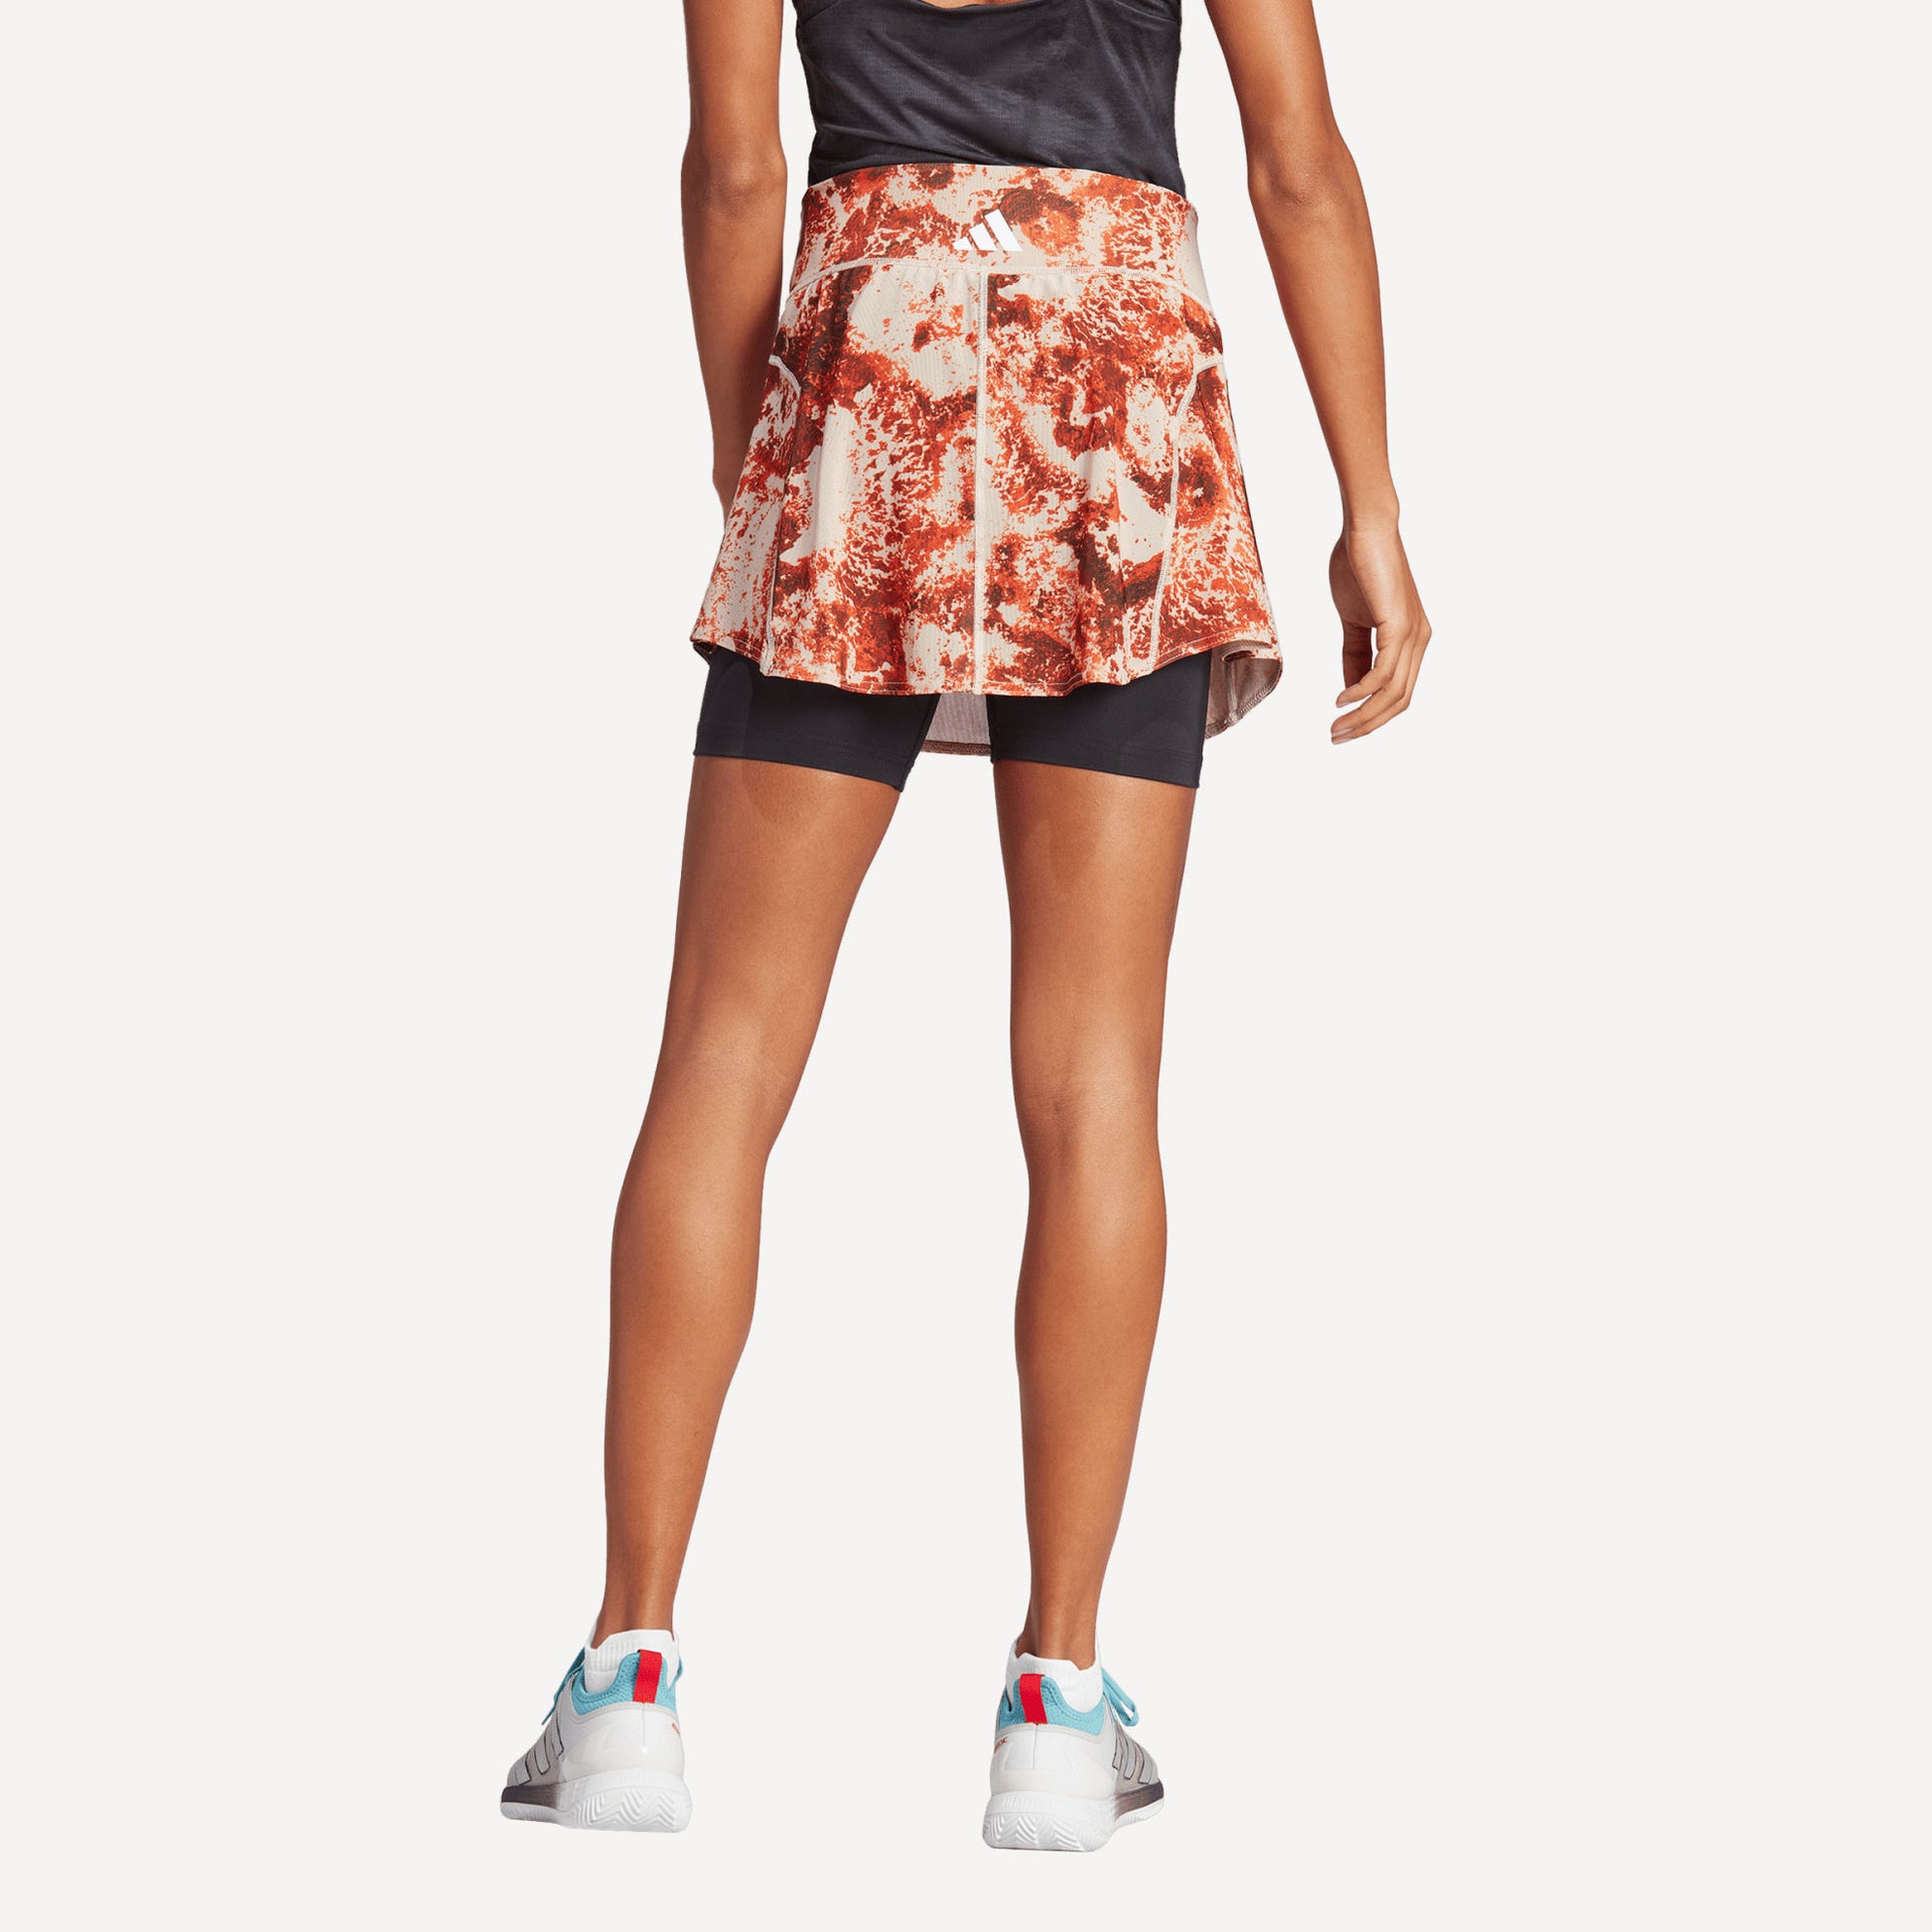 adidas Paris Match Women's Tennis Skirt Brown (2)